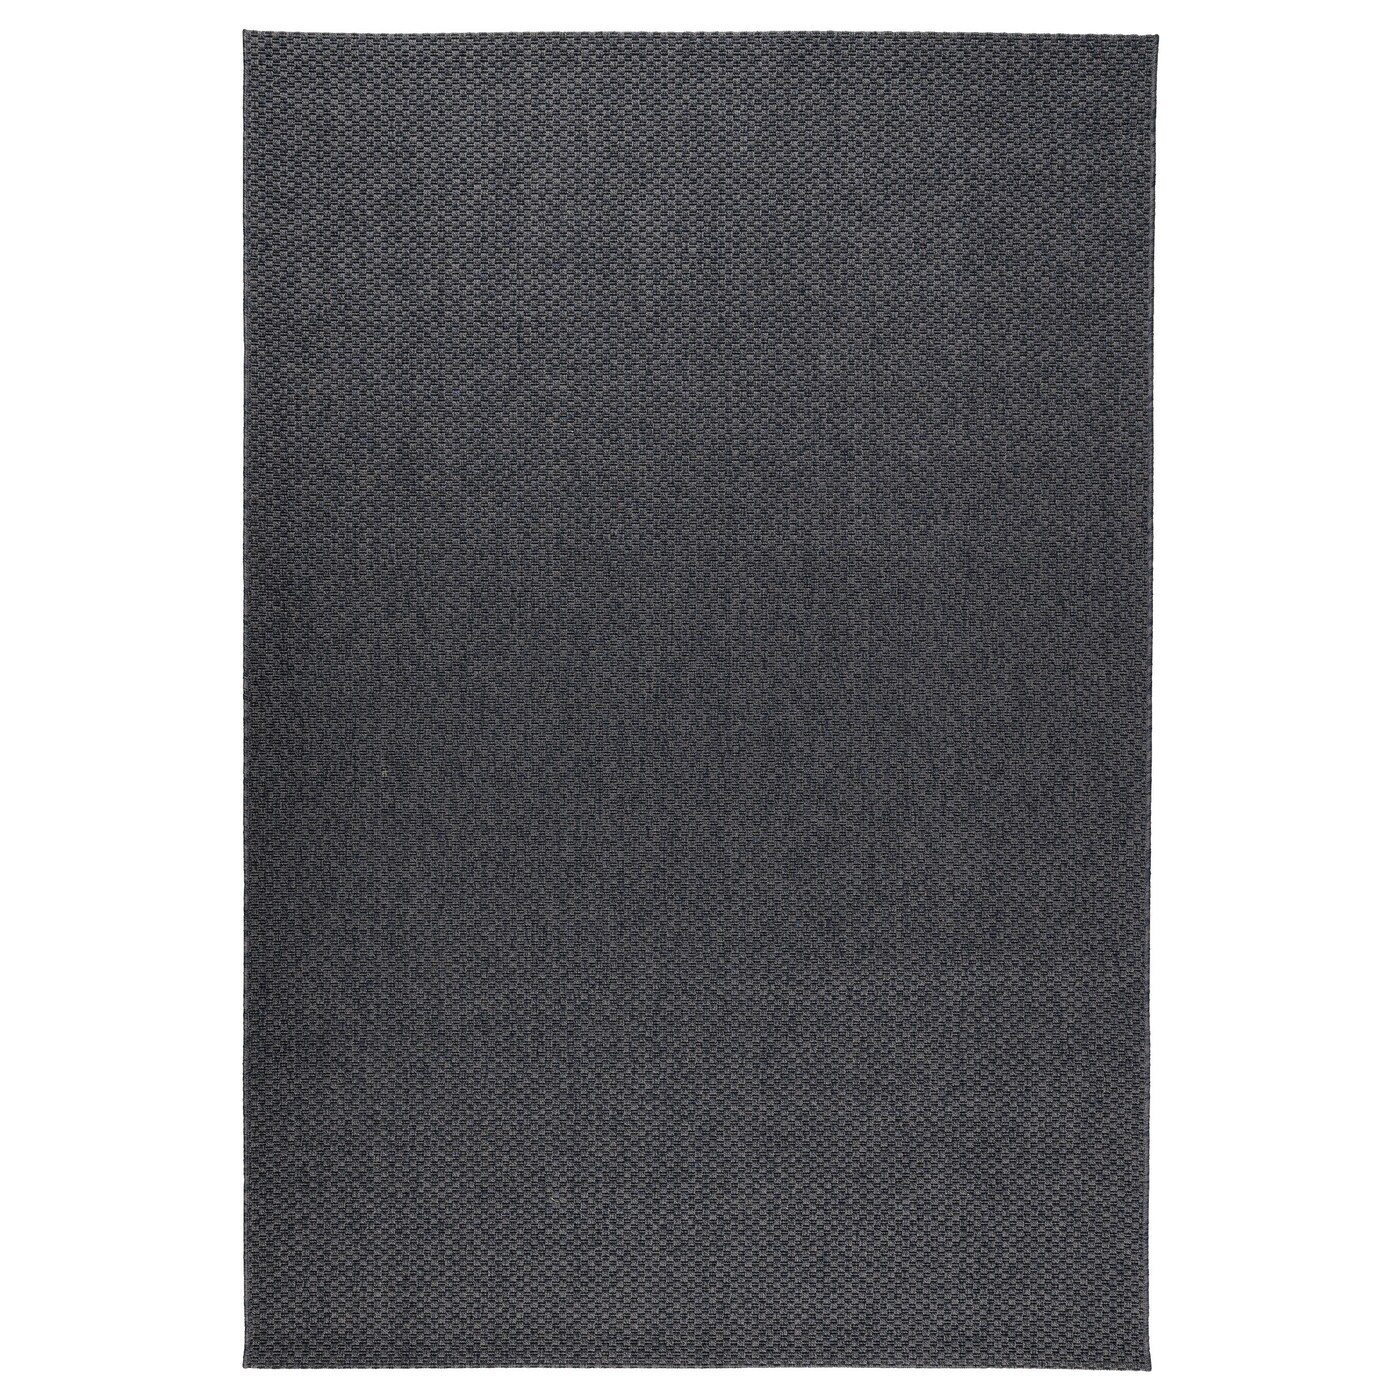 morum-alfombra-int-exterior-gris-oscuro_0123531_pe279667_s5.jpg